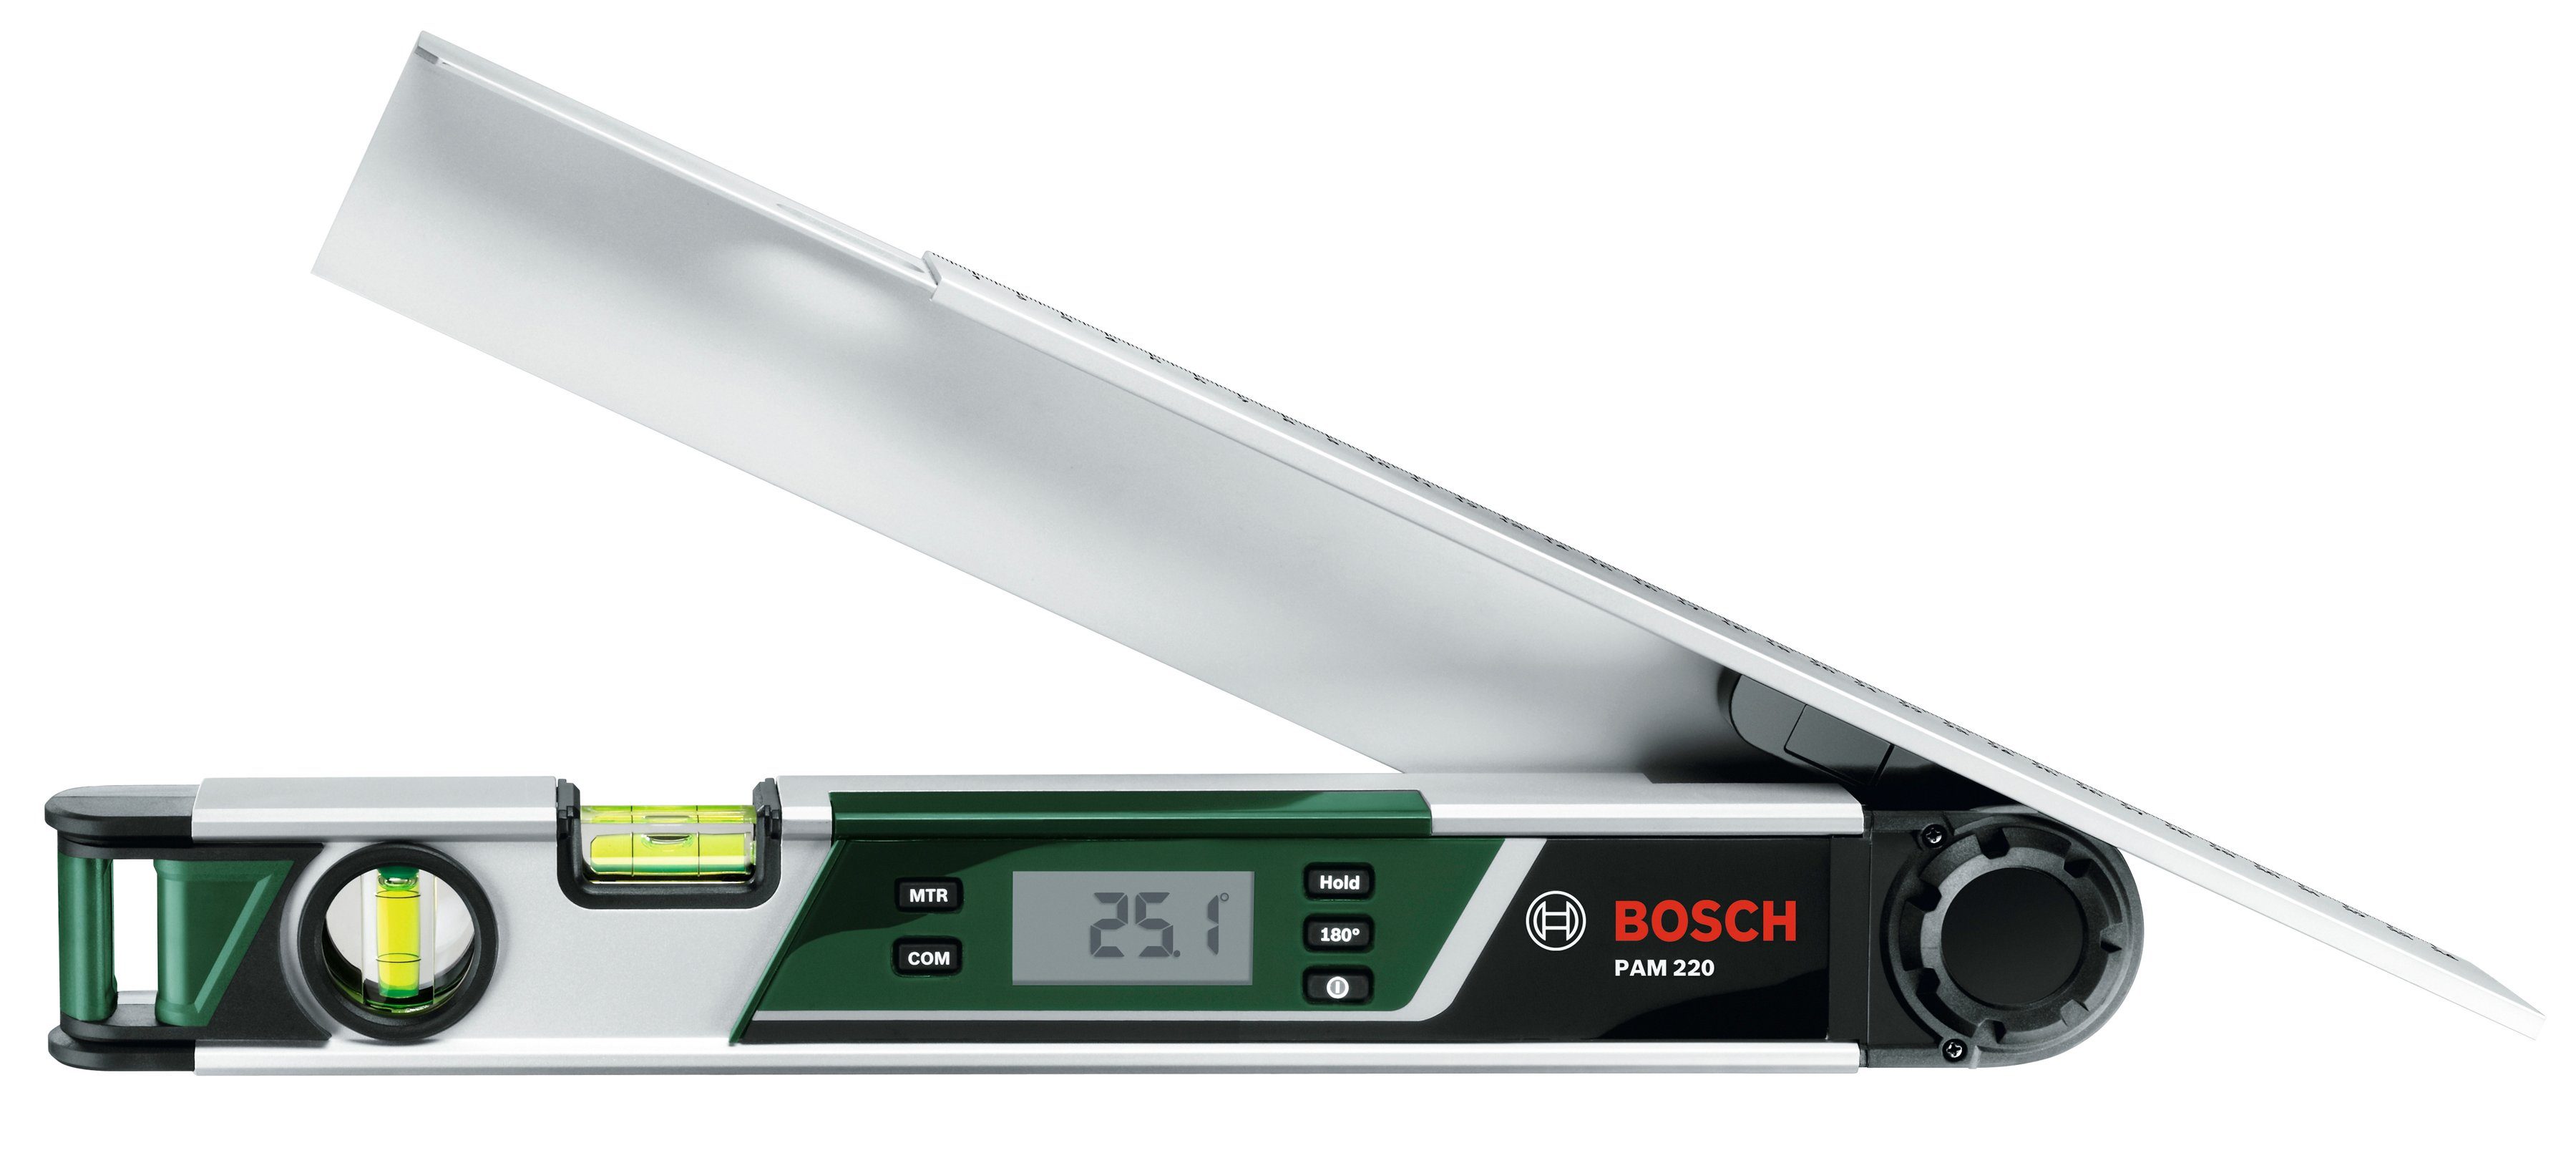 Bosch Home & L:42,5 cm Winkelmesser 220°, bis PAM 220, Garden